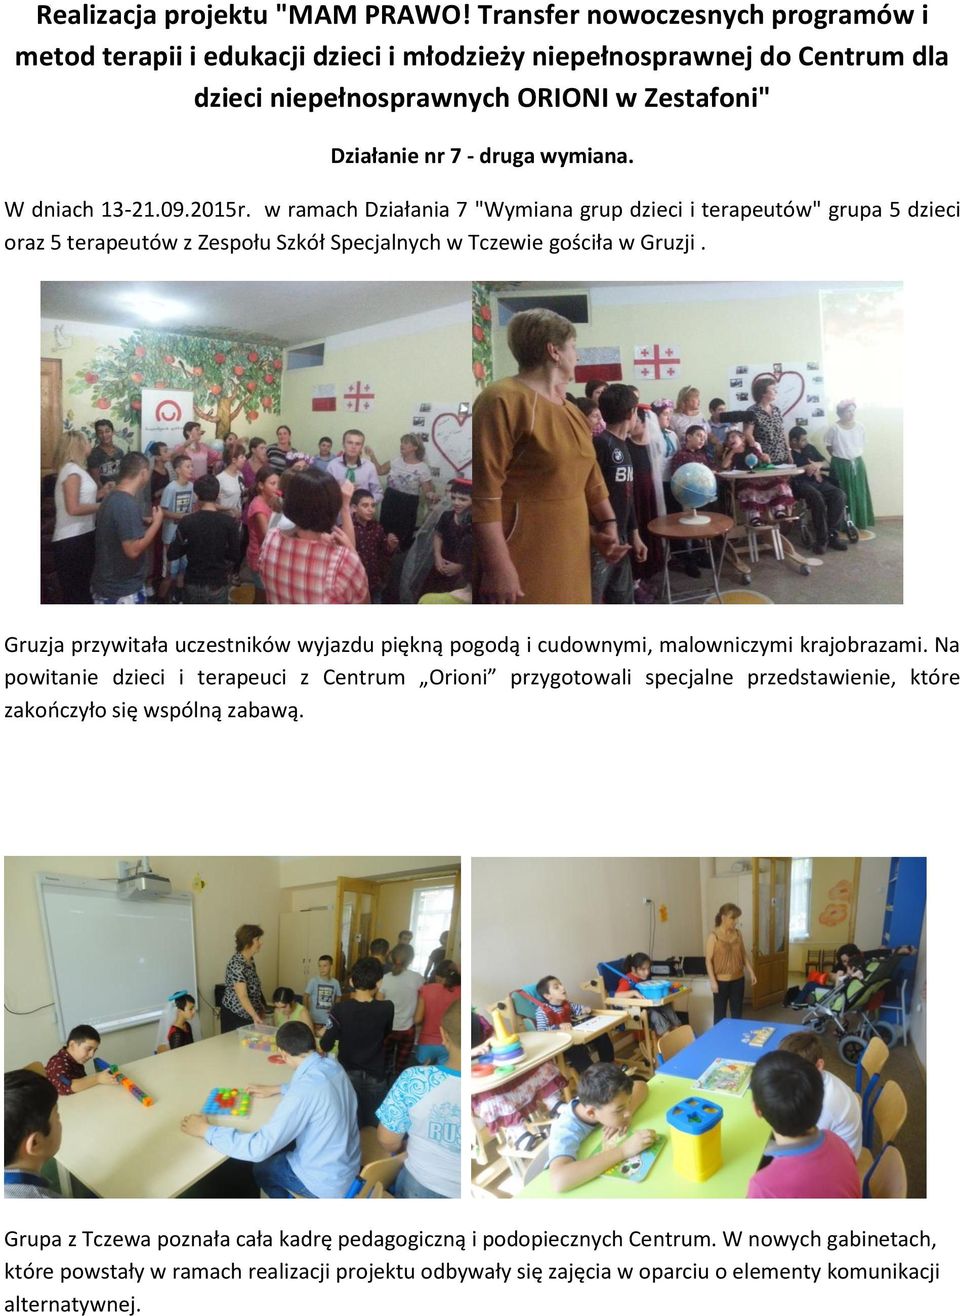 W dniach 13-21.09.2015r. w ramach Działania 7 "Wymiana grup dzieci i terapeutów" grupa 5 dzieci oraz 5 terapeutów z Zespołu Szkół Specjalnych w Tczewie gościła w Gruzji.